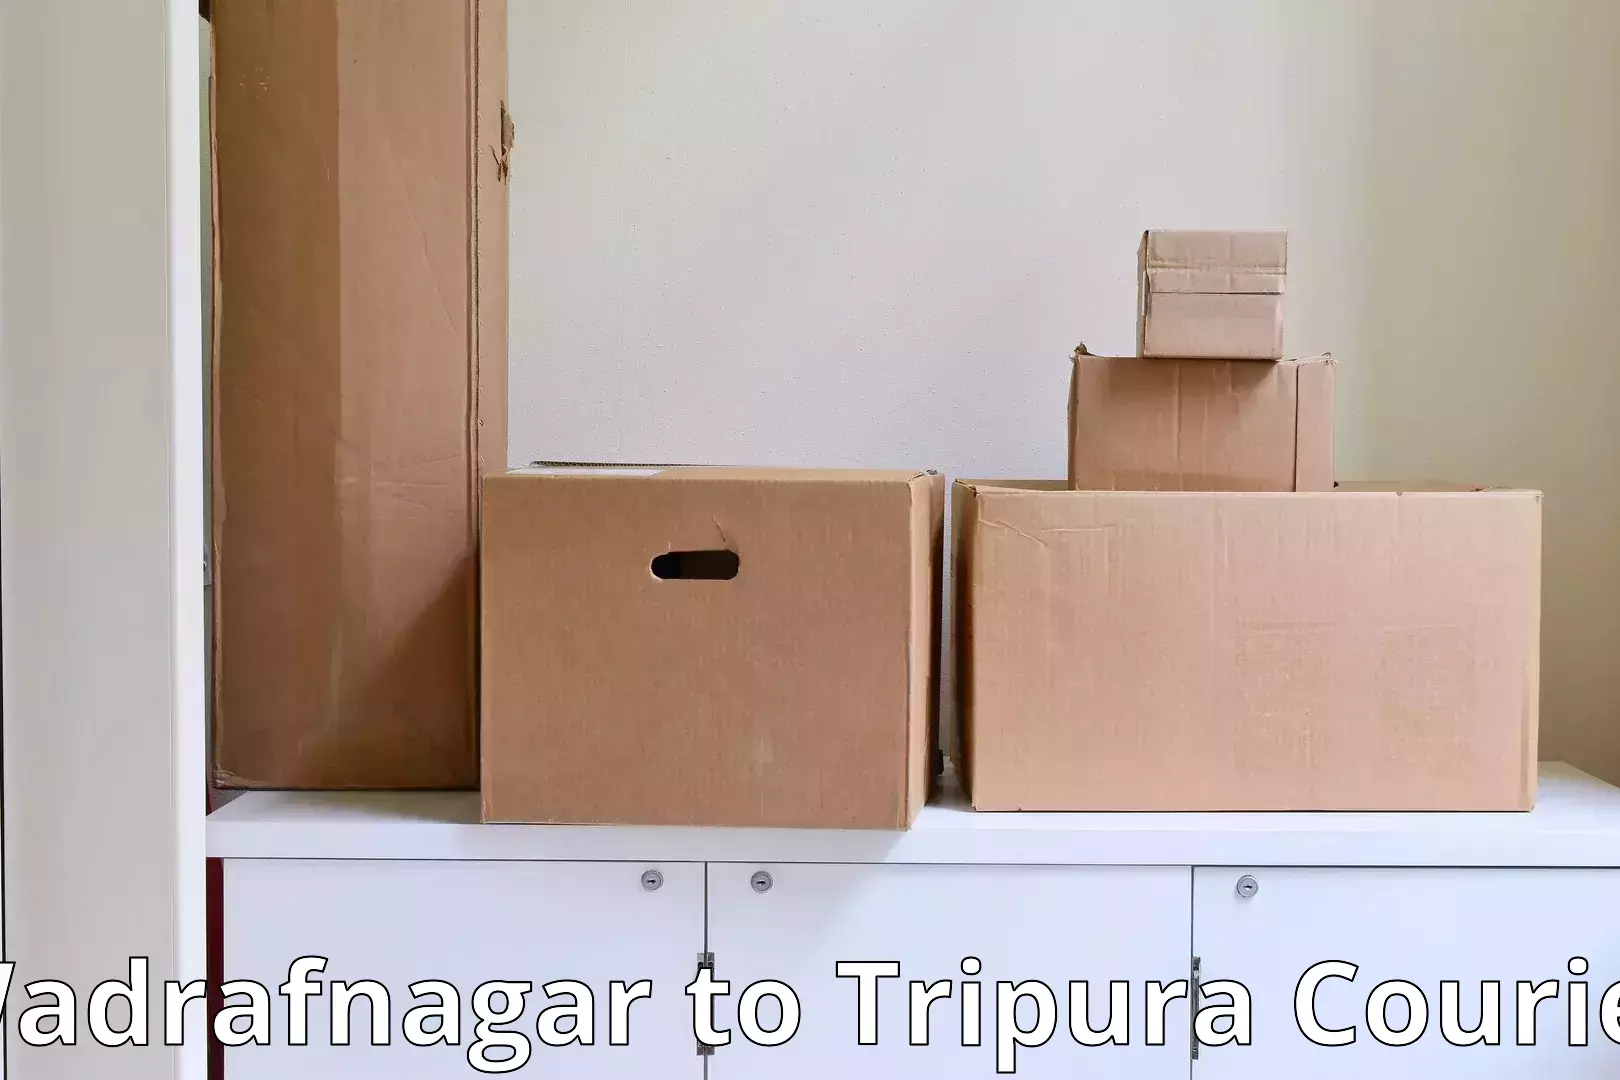 Efficient packing services in Wadrafnagar to Dharmanagar